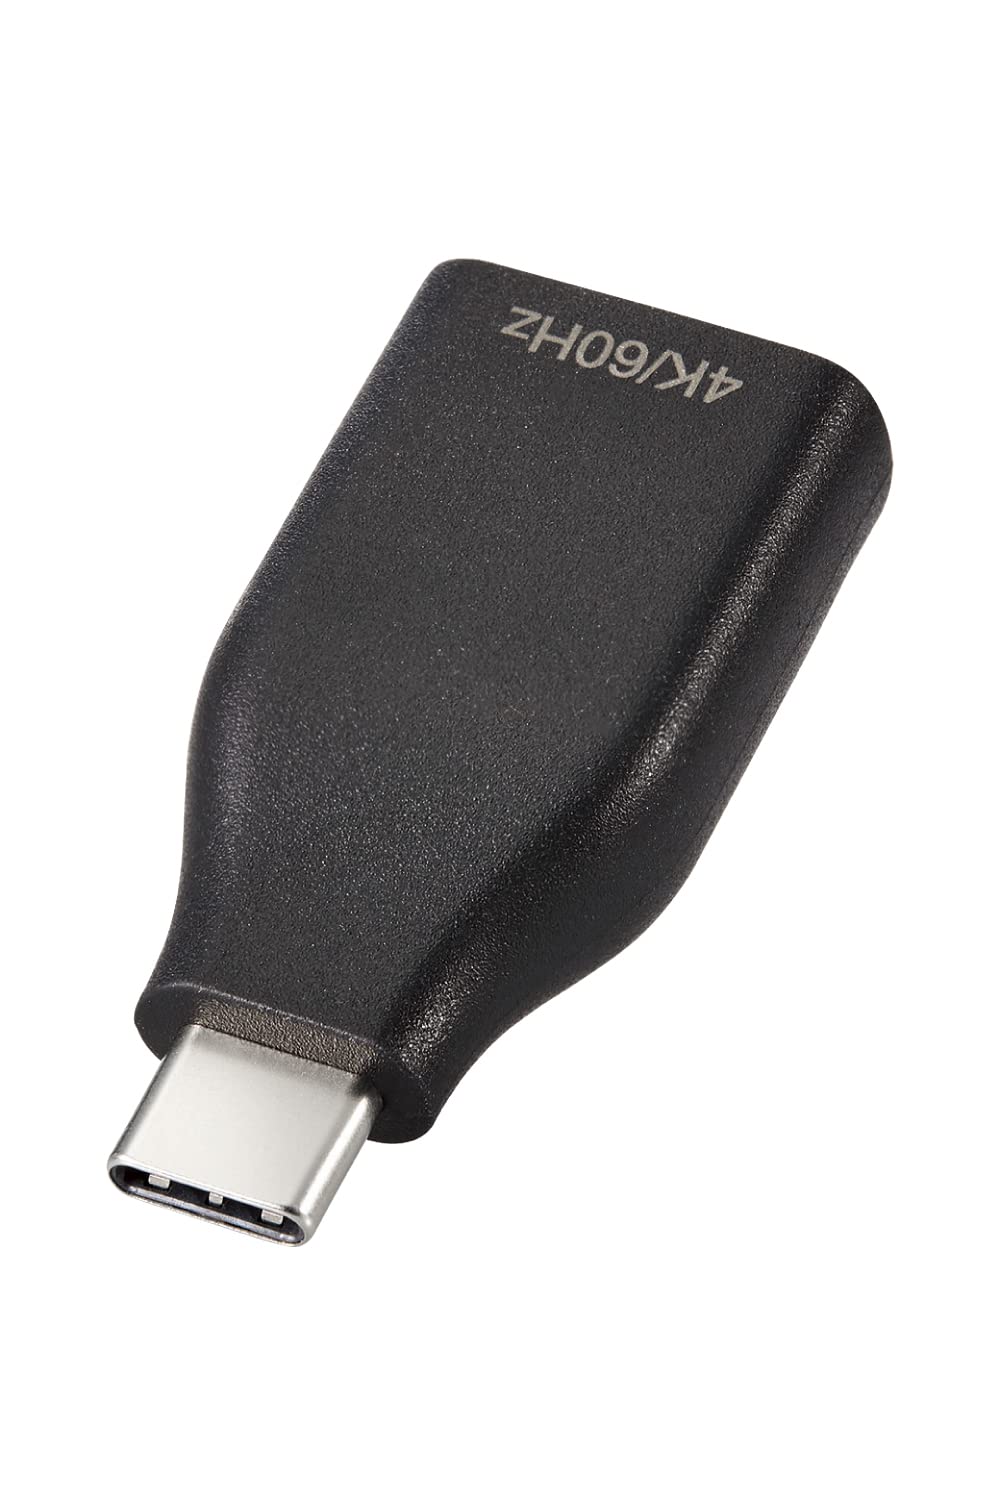 エレコム USB Type C HDMI 変換 アダプタ 映像出力 4K/2K 3840×2160 60Hz ブラック Windows MacBook iPad Android Prime video Netflix